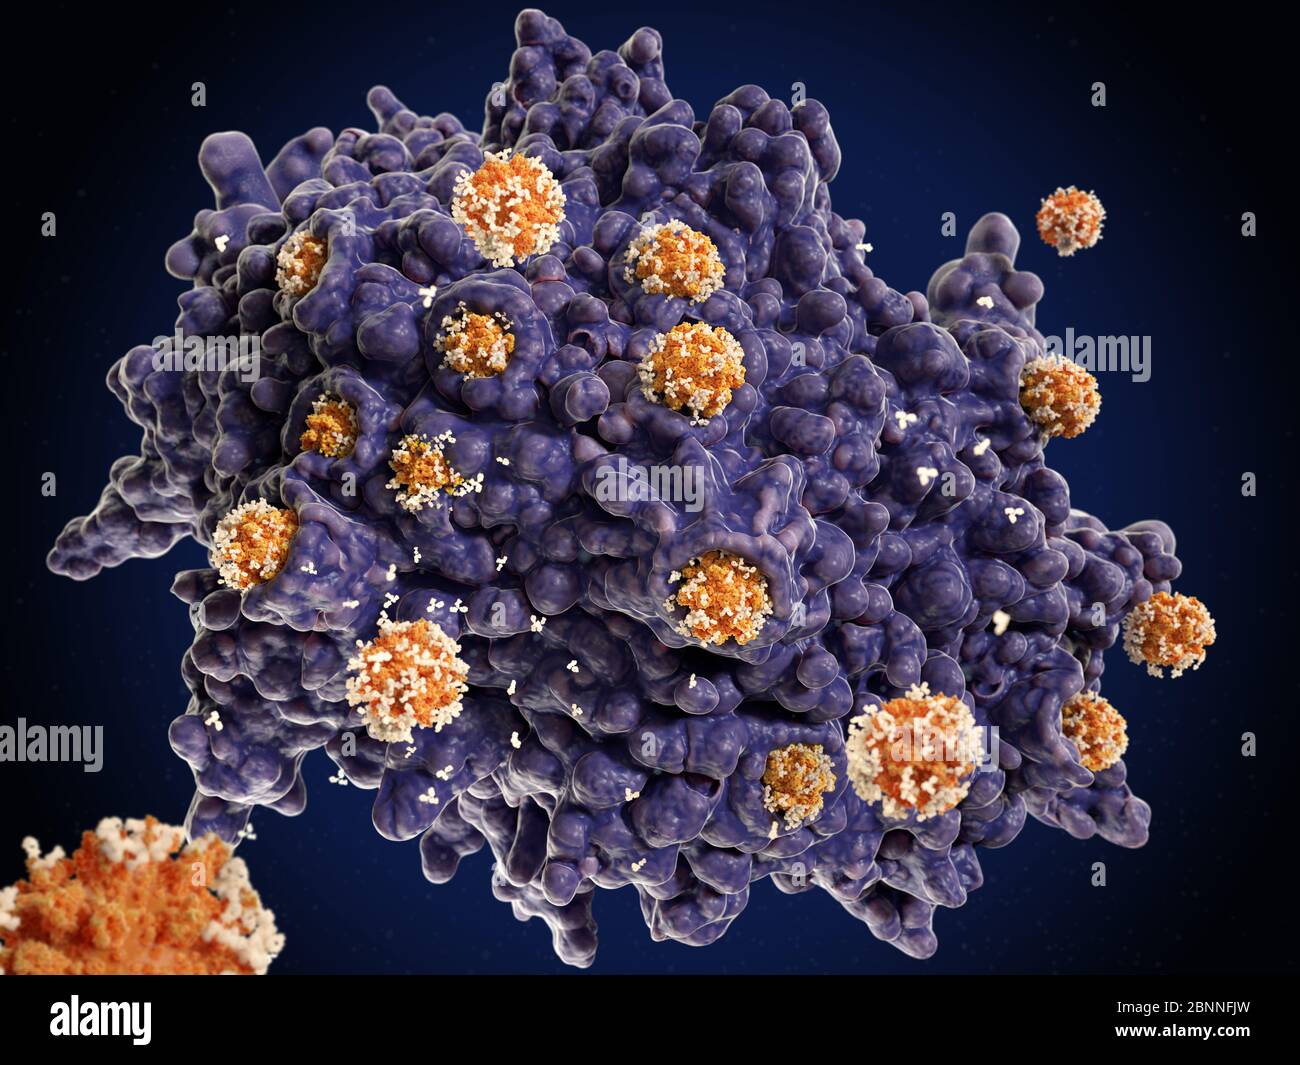 Abbildung einer Makrophagen-weißen Blutkörperchen (violett), die Coronavirus-Partikel (orange) verschlingen. Dieser Prozess wird Phagozytose genannt. Makrophagen sind Zellen des körpereigenen Immunsystems. Sie nehmen Phagozytose (engulf) auf und zerstören Krankheitserreger, abgestorbene Zellen und Zellreste. Die Coronavirus-Partikel wurden mit Antikörpern (weiß) markiert, um den Makrophagen zu signalisieren, sie zu zerstören. Stockfoto